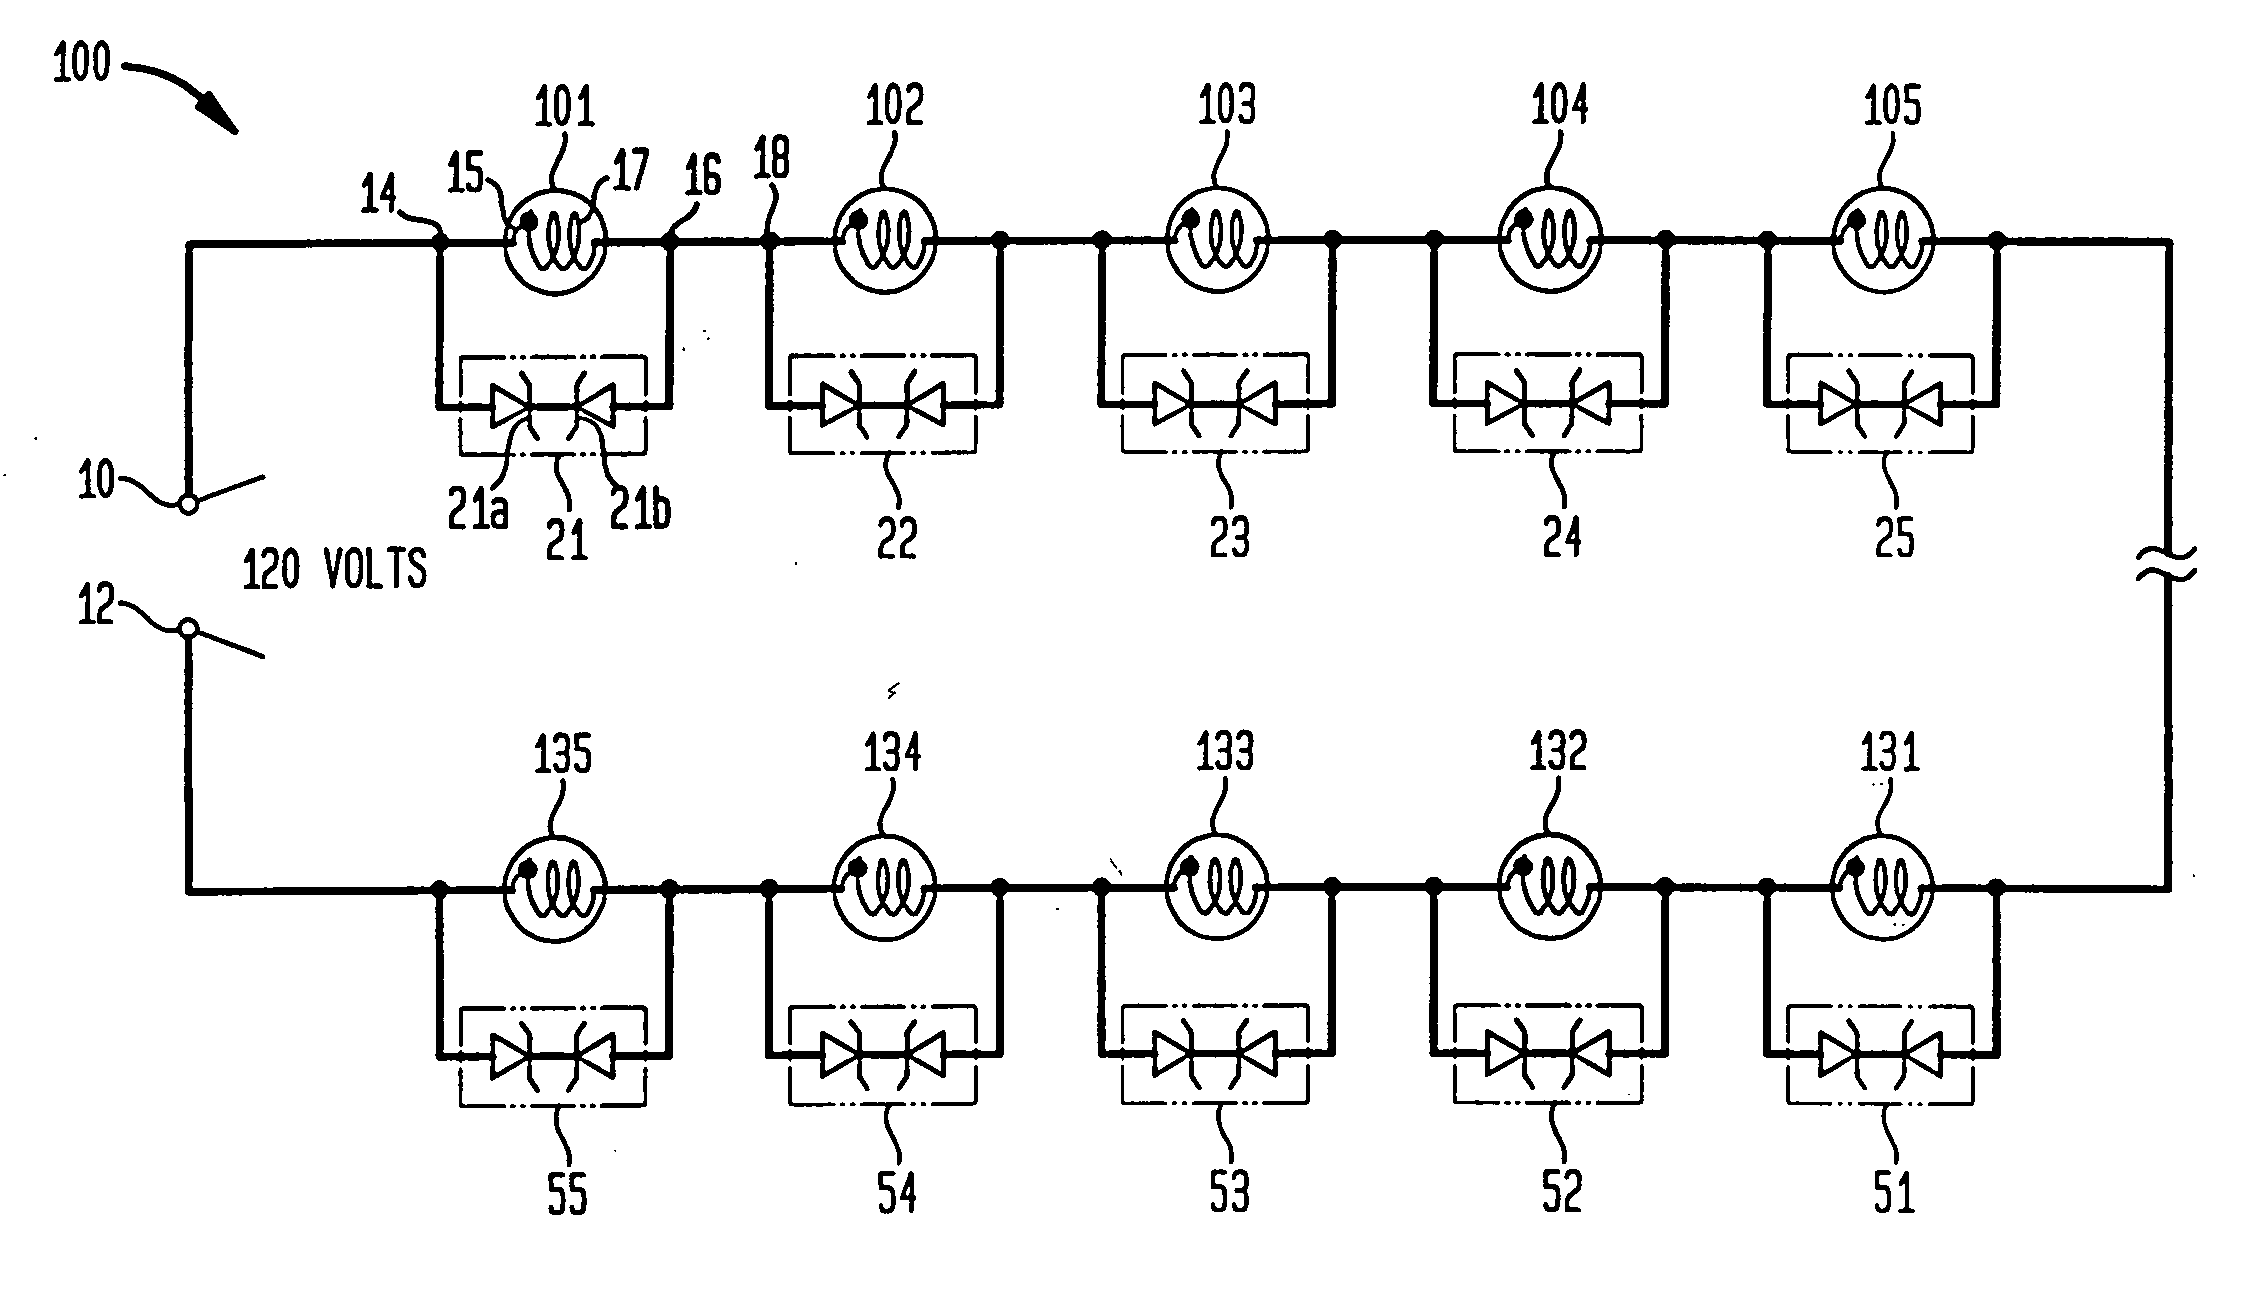 Voltage regulated light string